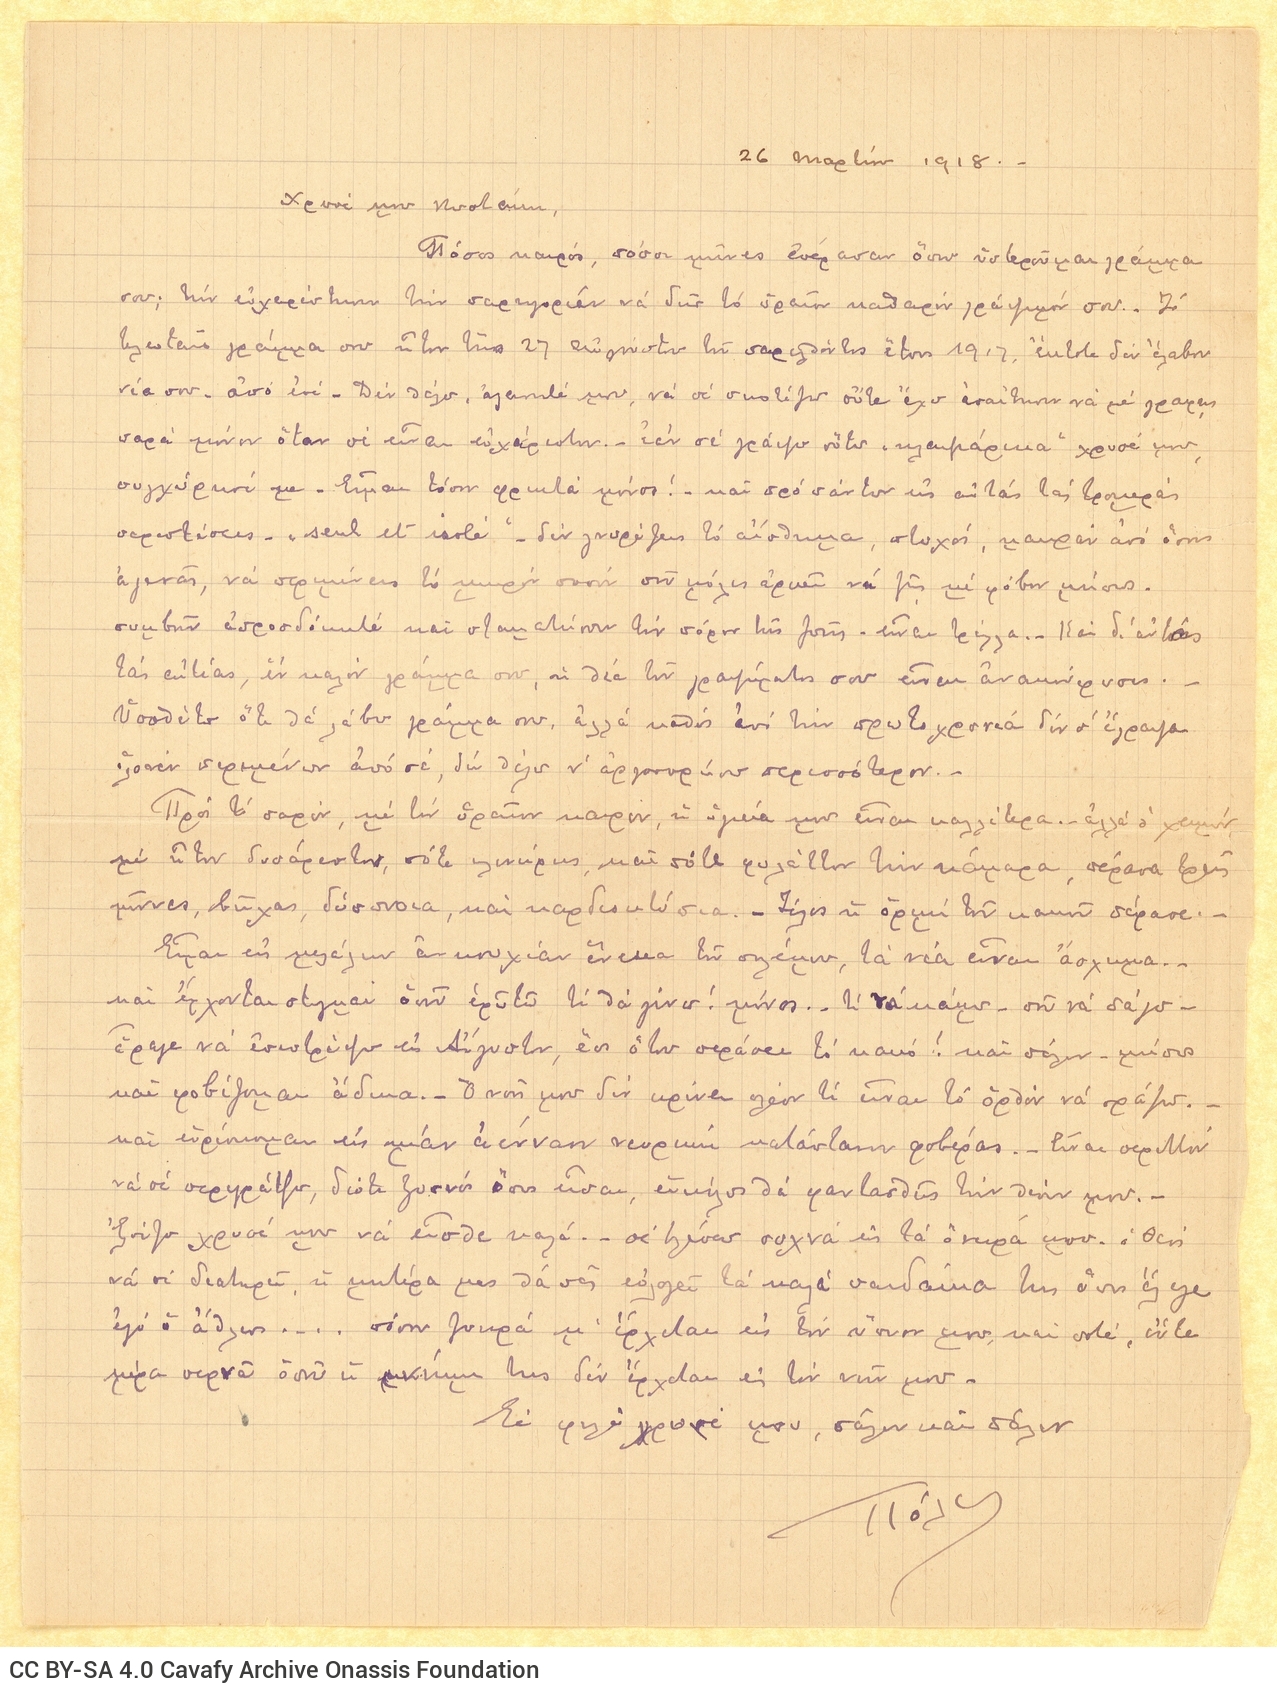 Χειρόγραφη επιστολή του Παύλου Καβάφη προς τον Κ. Π. Καβάφη. Εκφράζετ